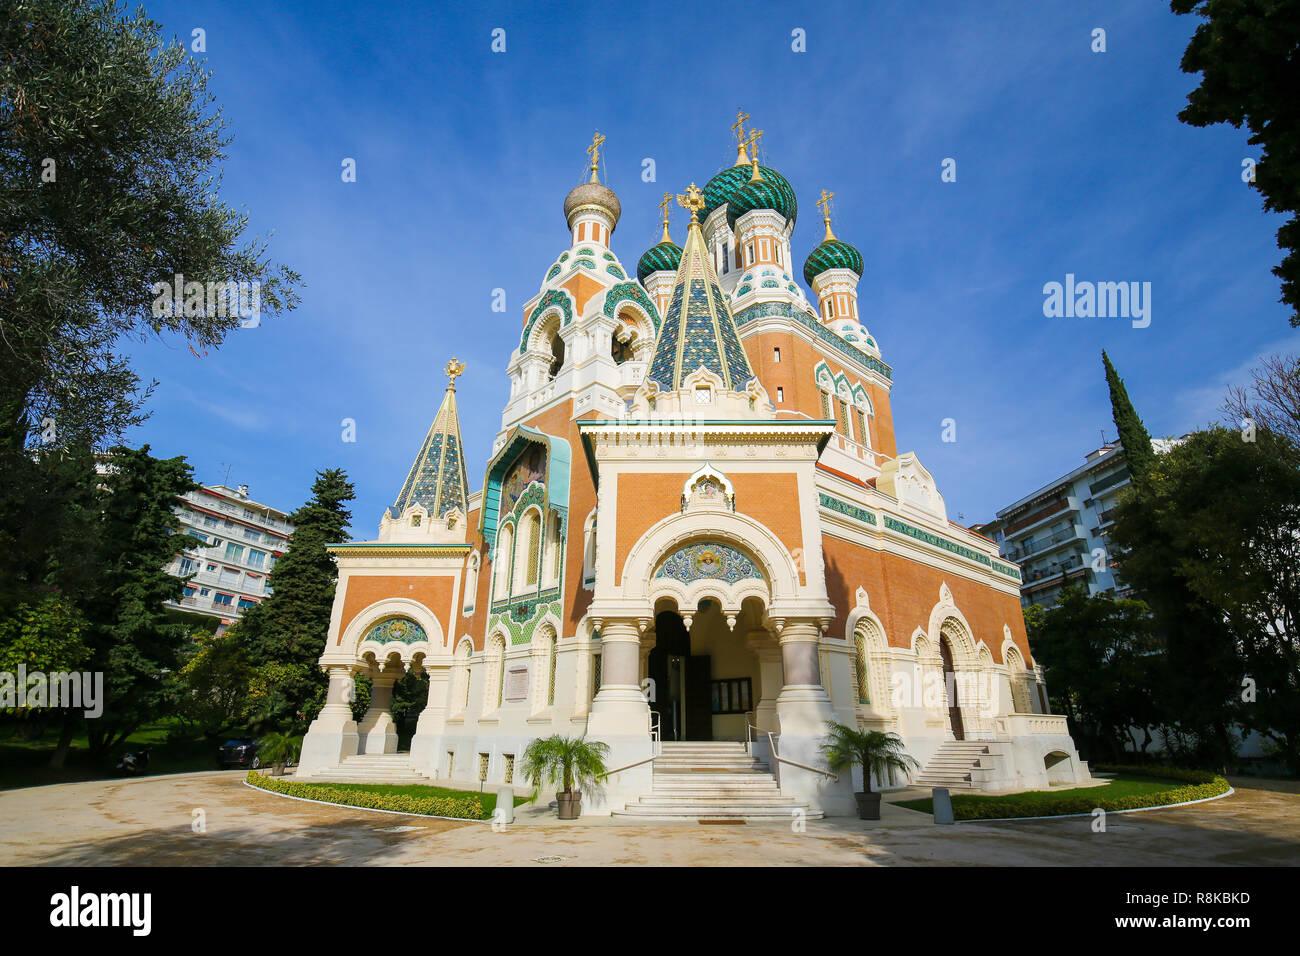 La chiesa russo-ortodossa Cattedrale di San Nicola a Nizza, in Francia, il più grande orientale Cattedrale Ortodossa in Europa occidentale. Foto Stock